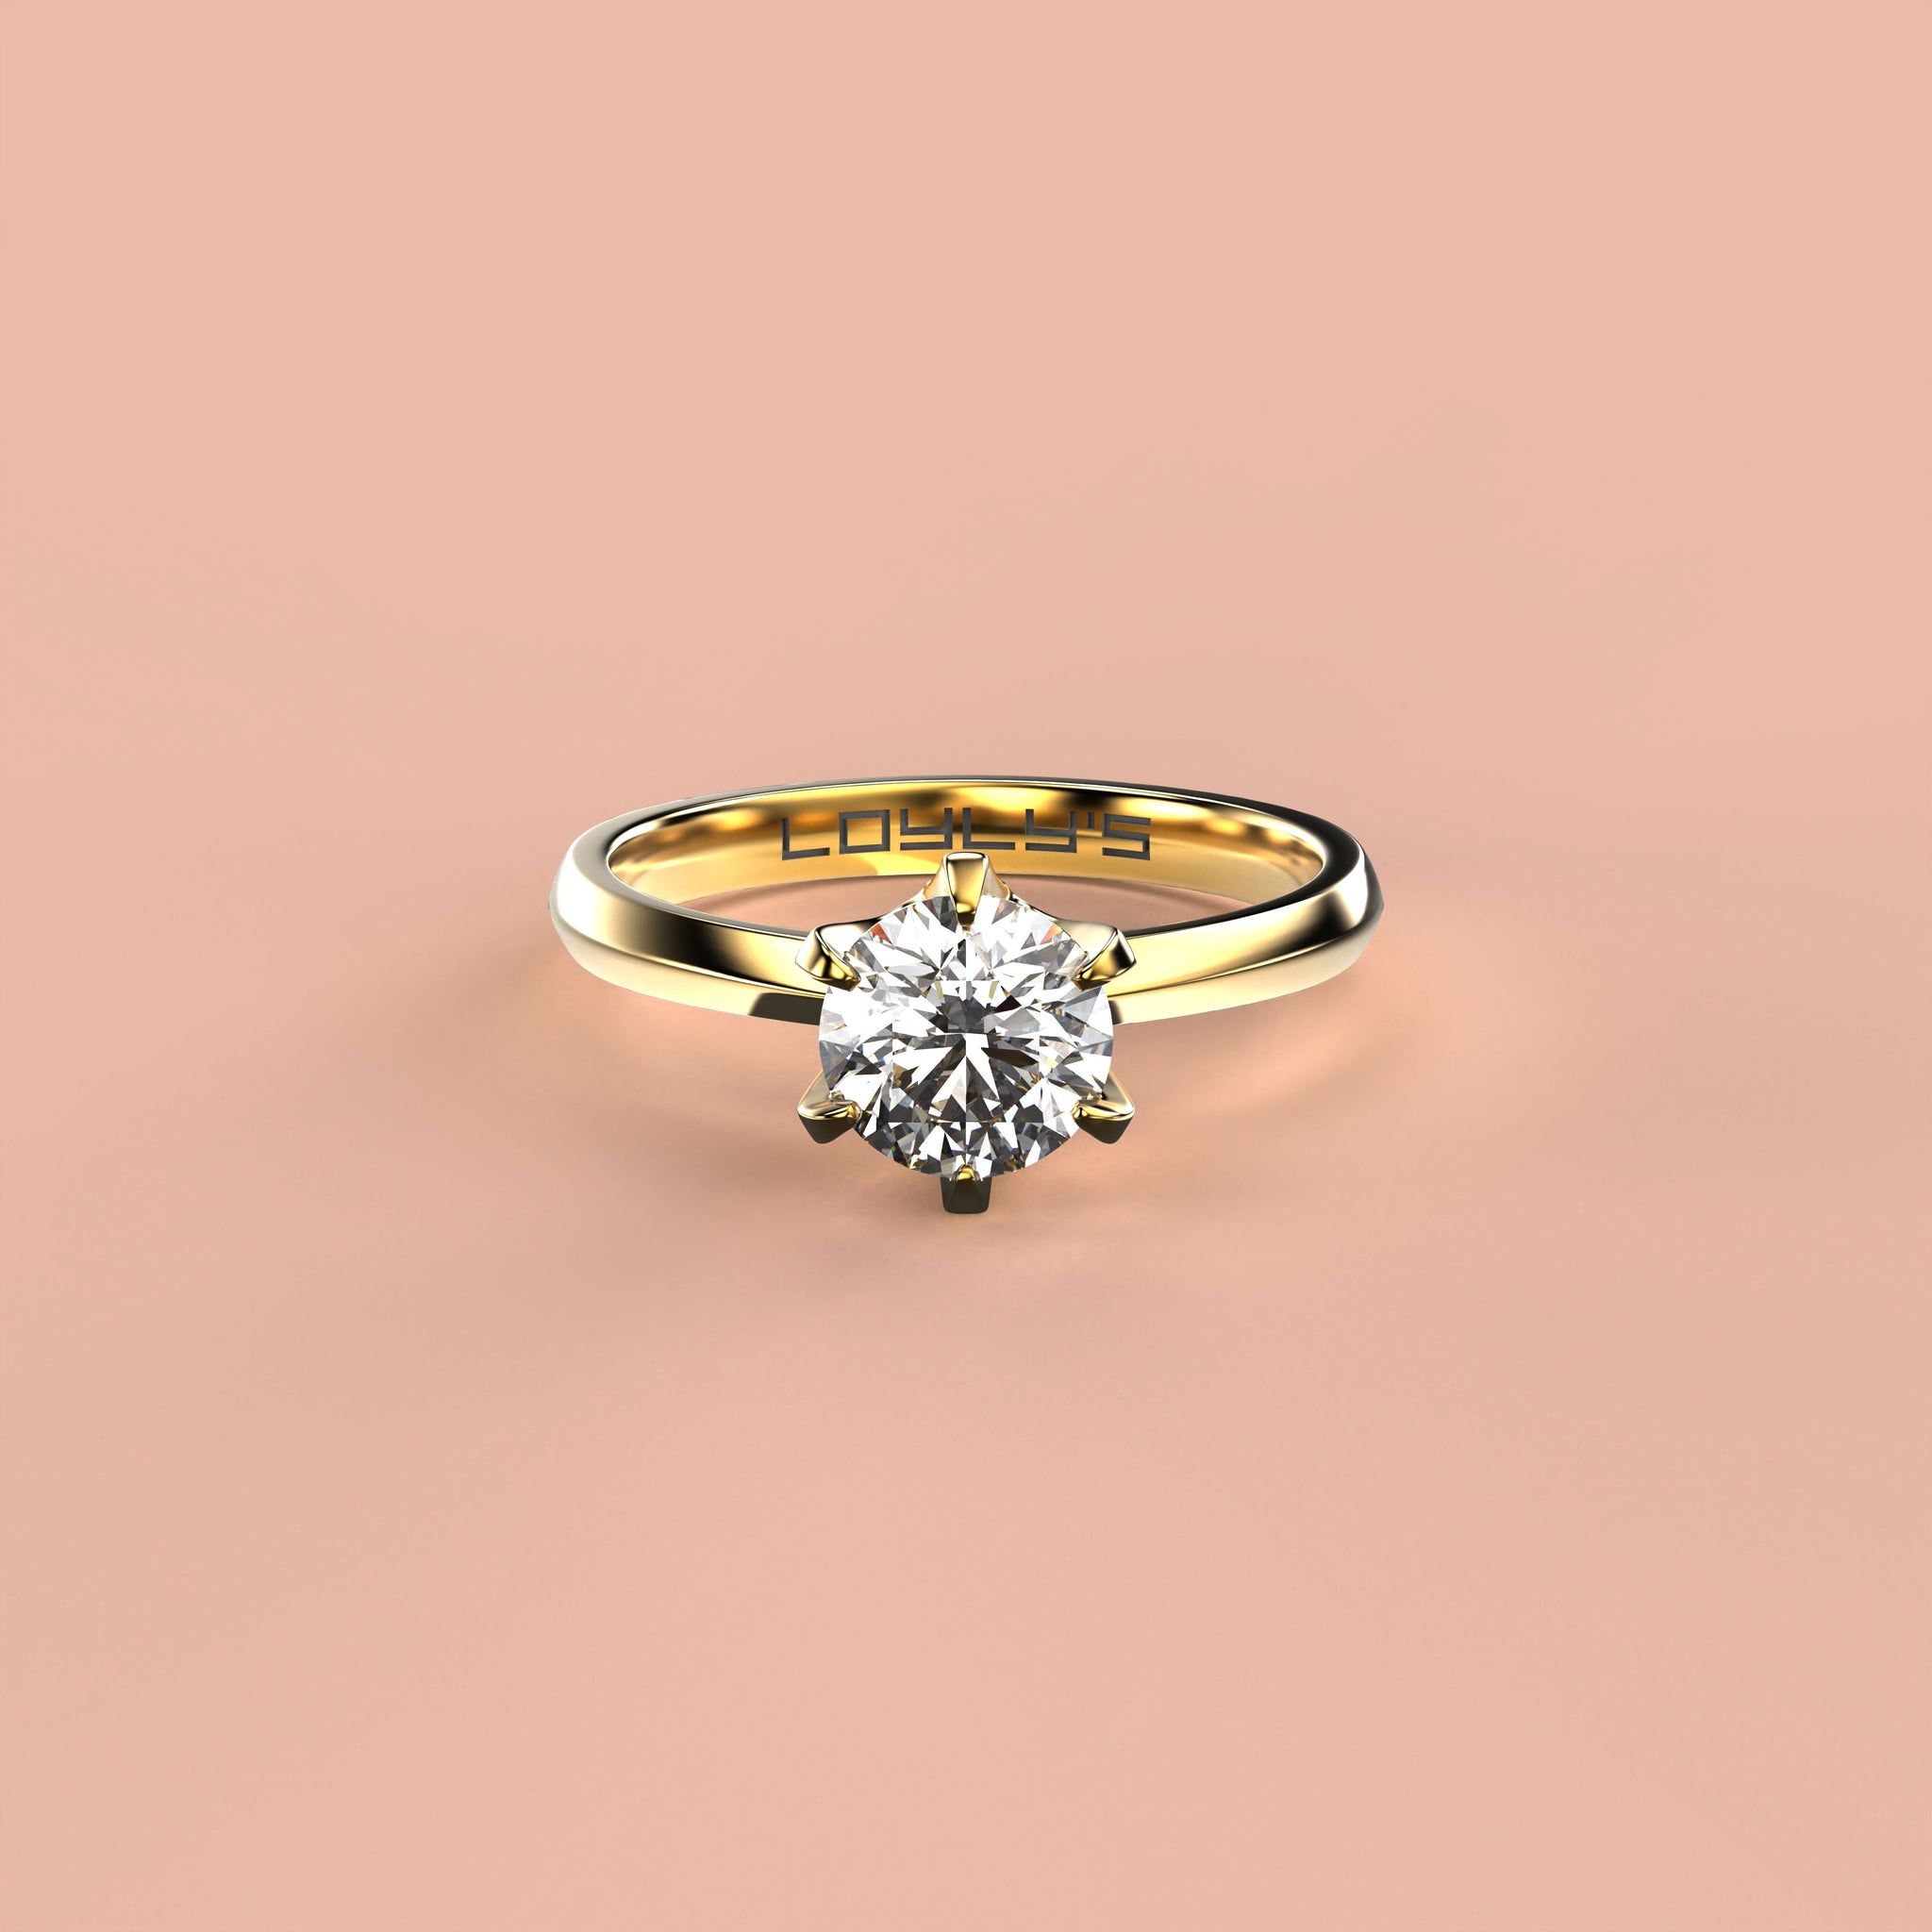 Replika - Loyly's "Ring" II: Legendarny pierścionek zaręczynowy Loyly's - testuj przez 3 dni za darmo